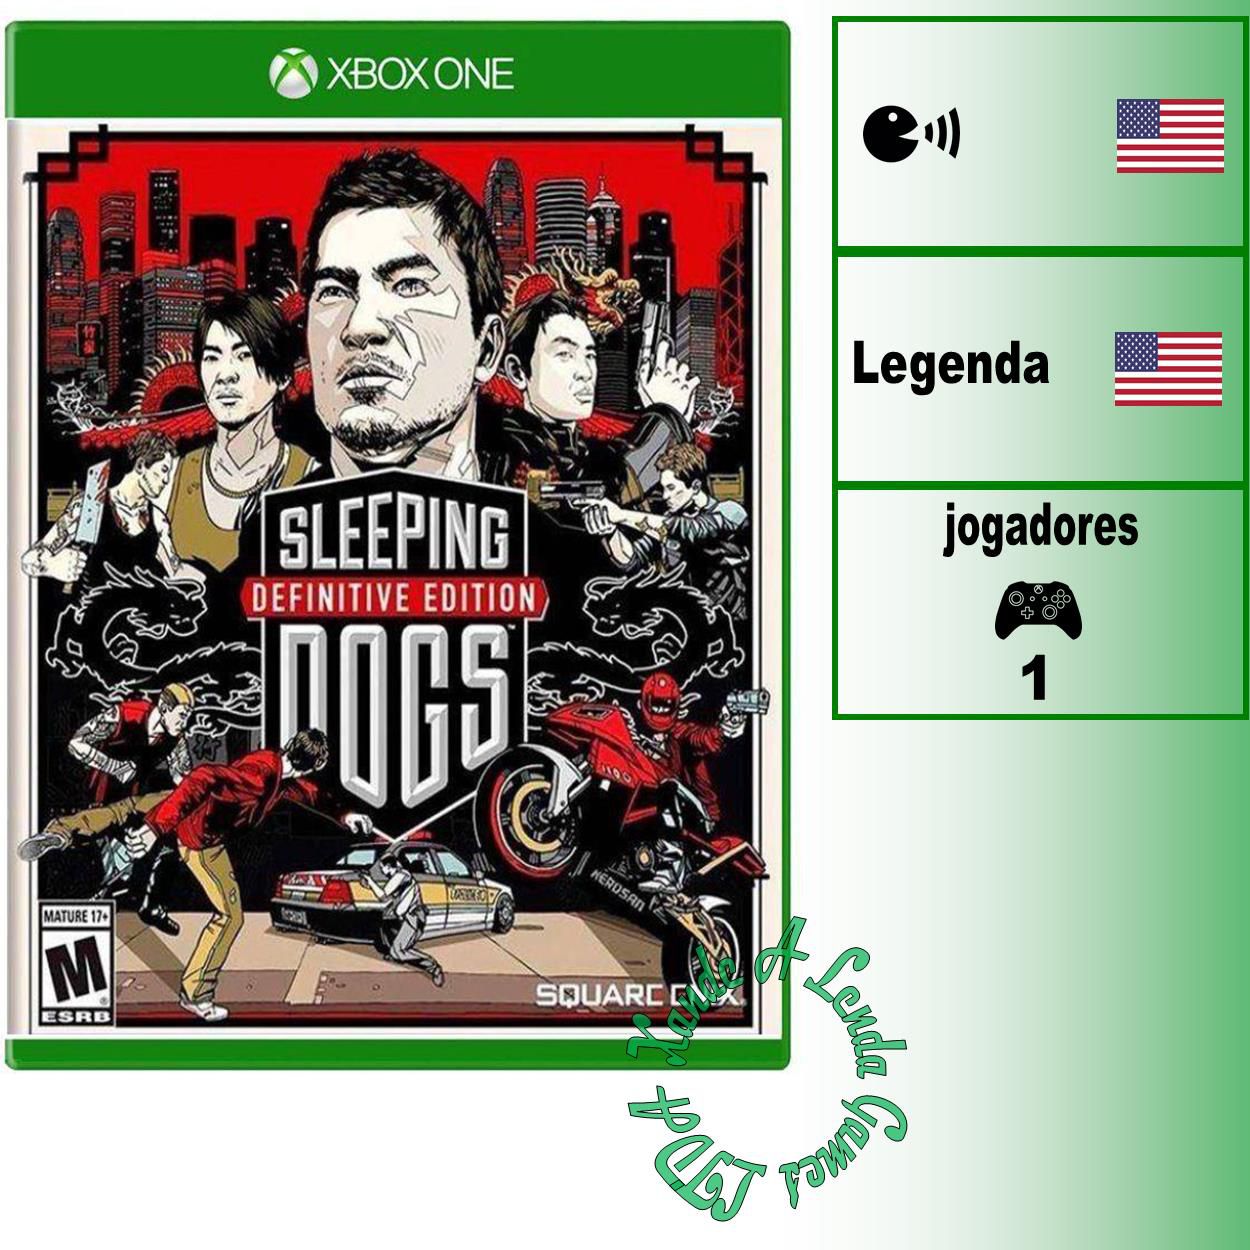 Sombras da Guerra - Definitive Edition - Xbox One